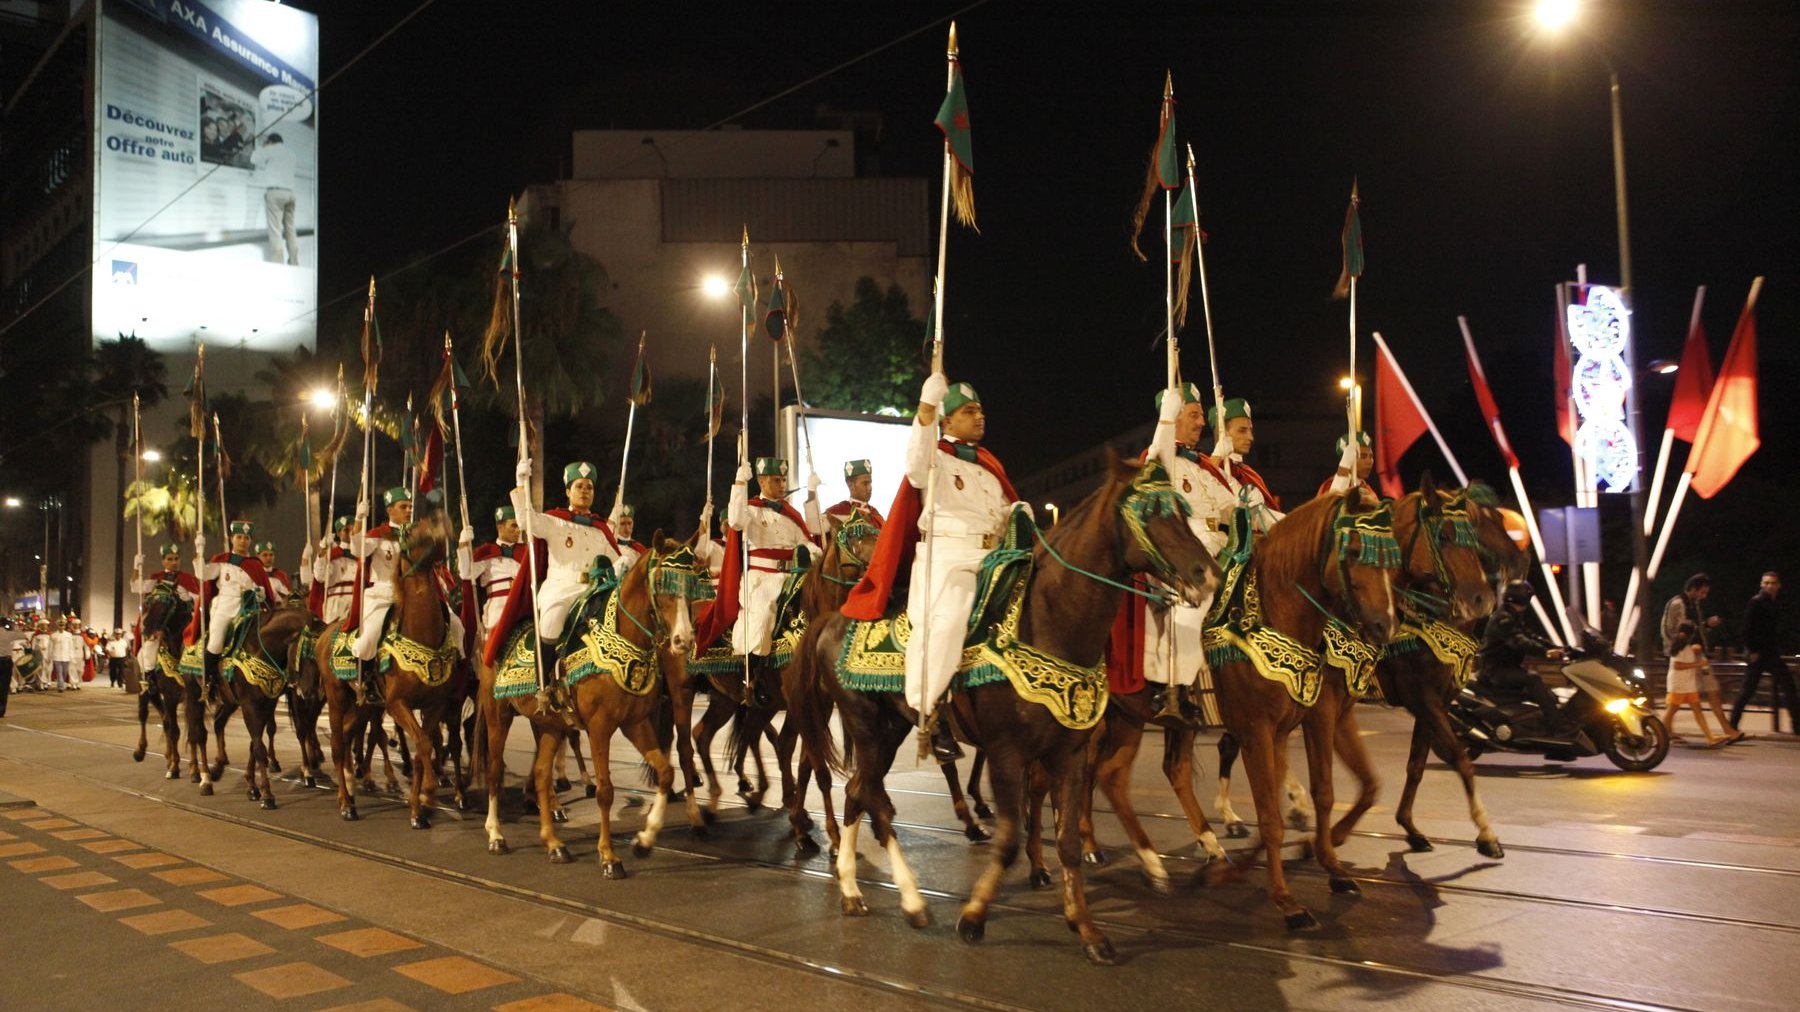 فرقة الخيالة التابعة للحرس الملكي في استعراض عيد العرش
